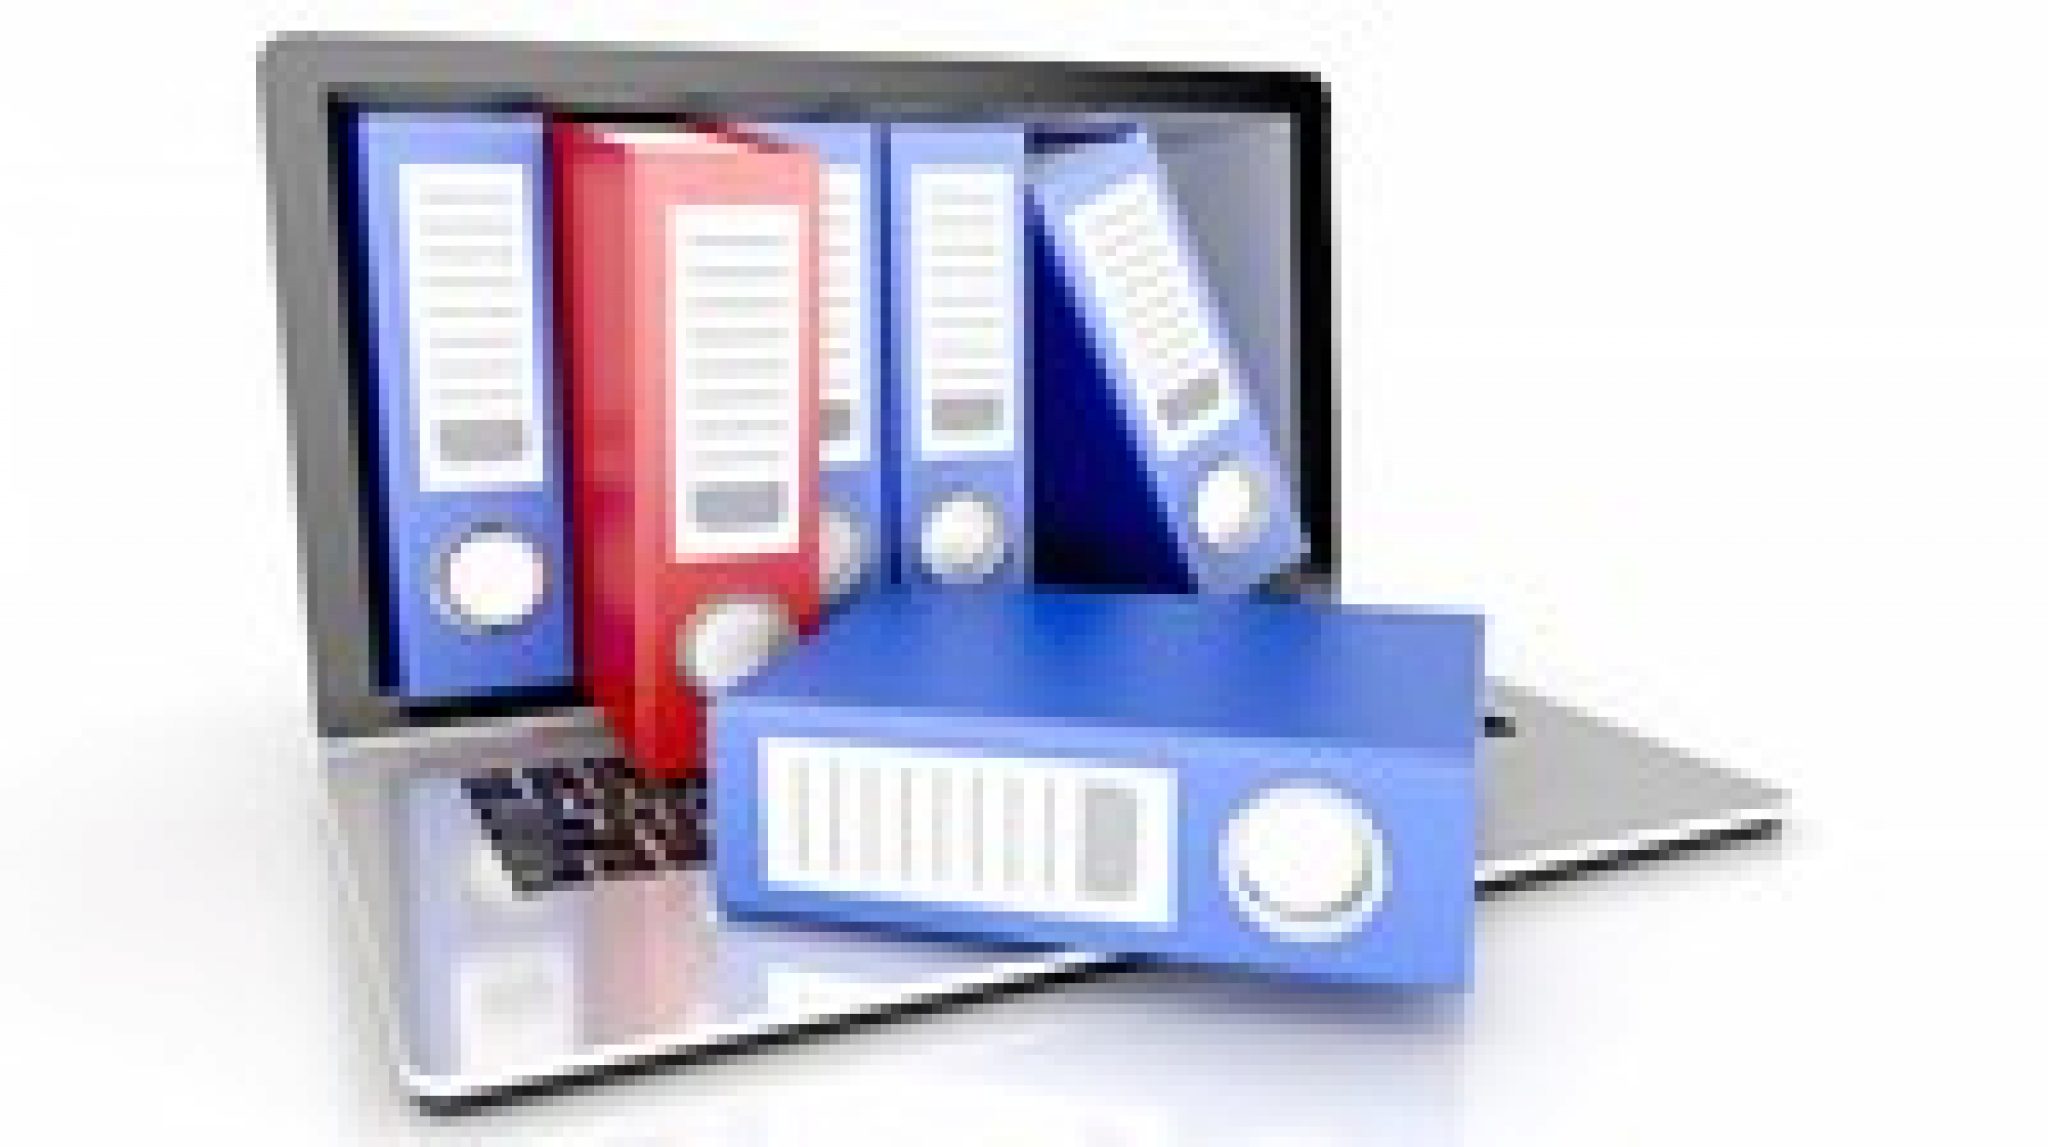 filemaker pro database management software solutions